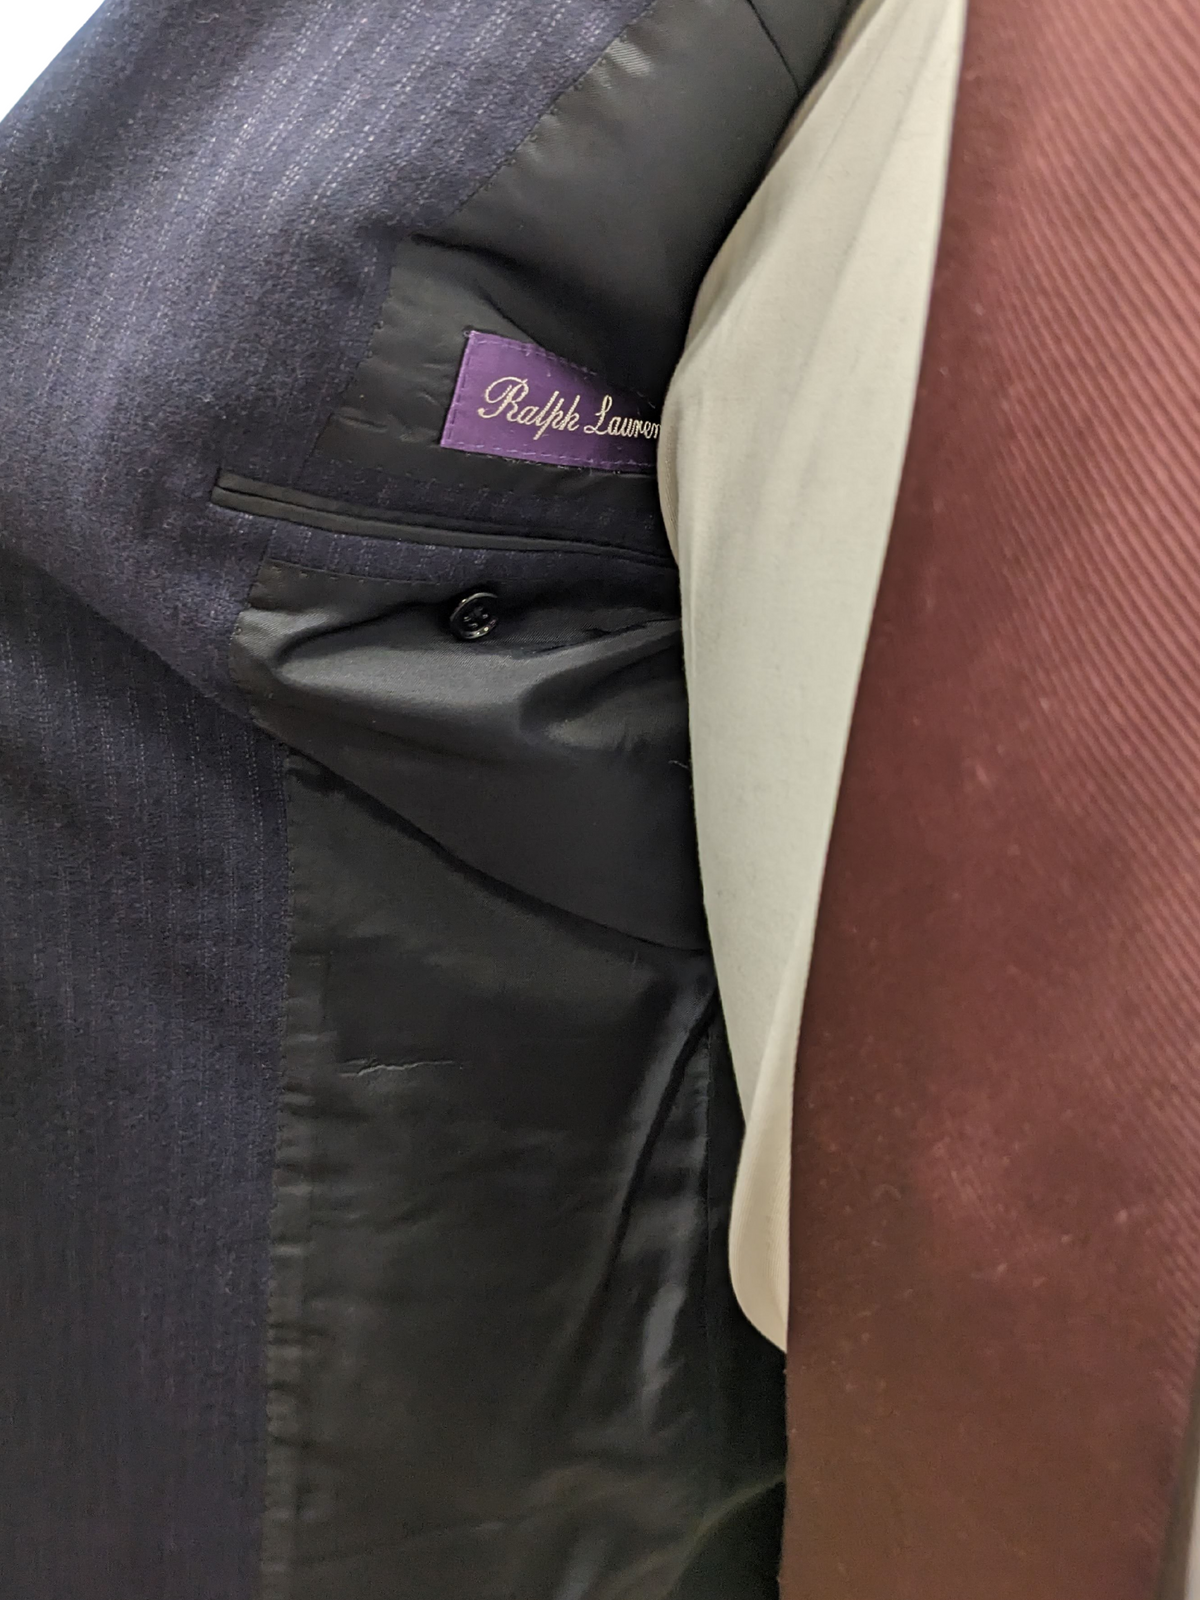 Ralph Lauren Purple Labels Mens 38L Navy Blue Pinstriped 3 Button 100% Wool Suit